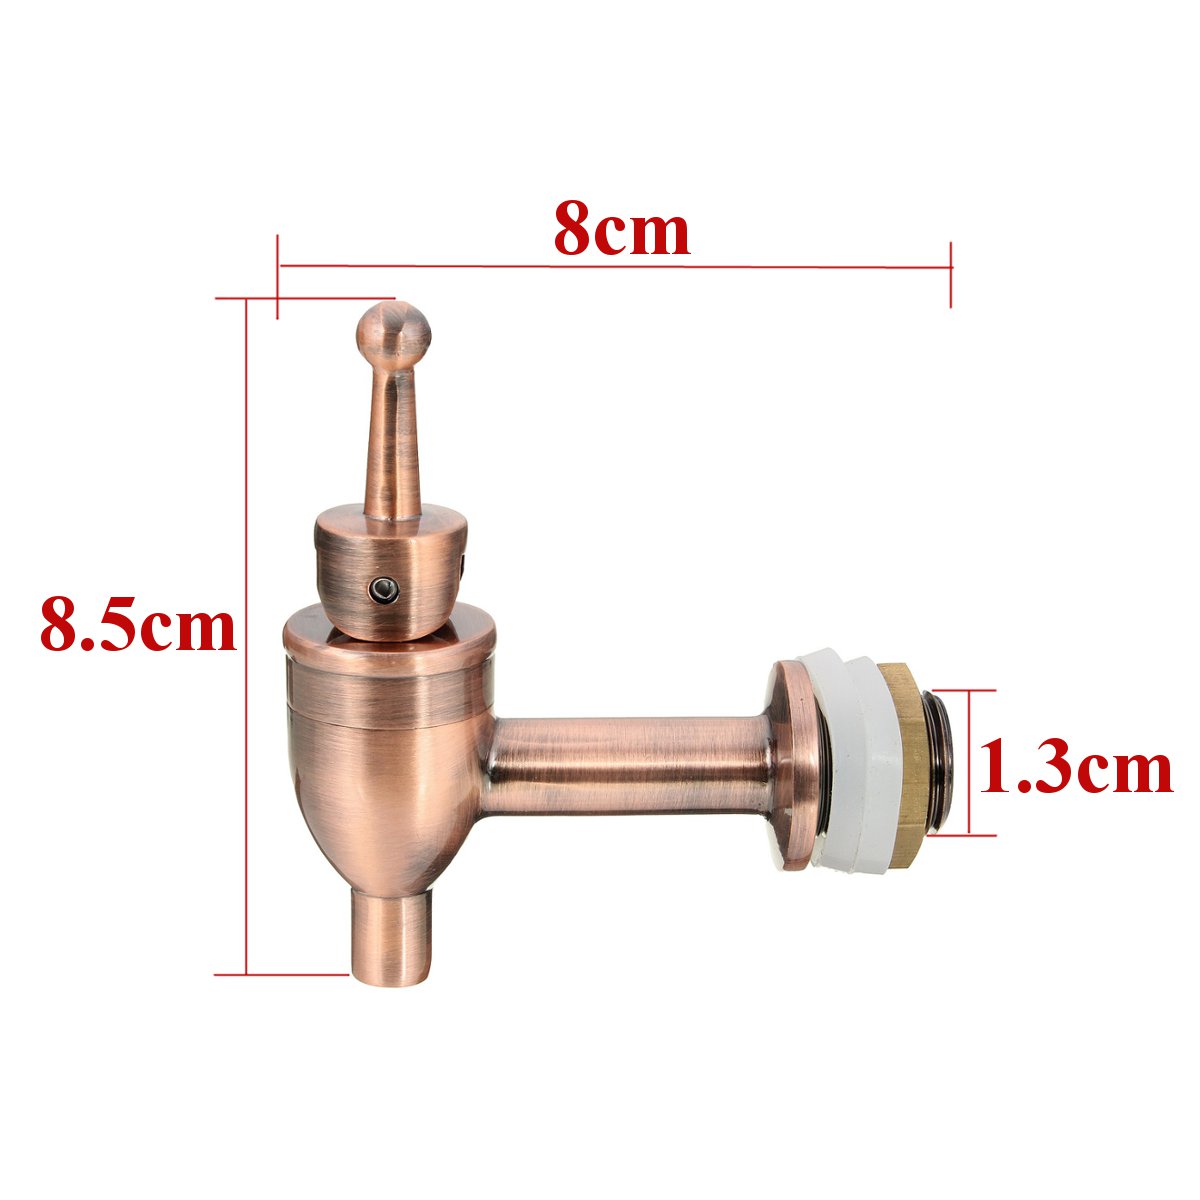 Brass-Copper-Wine-Barrel-Cold-Water-Spigot-Faucet-For-Drink-Beverage-Dispenser-1342334